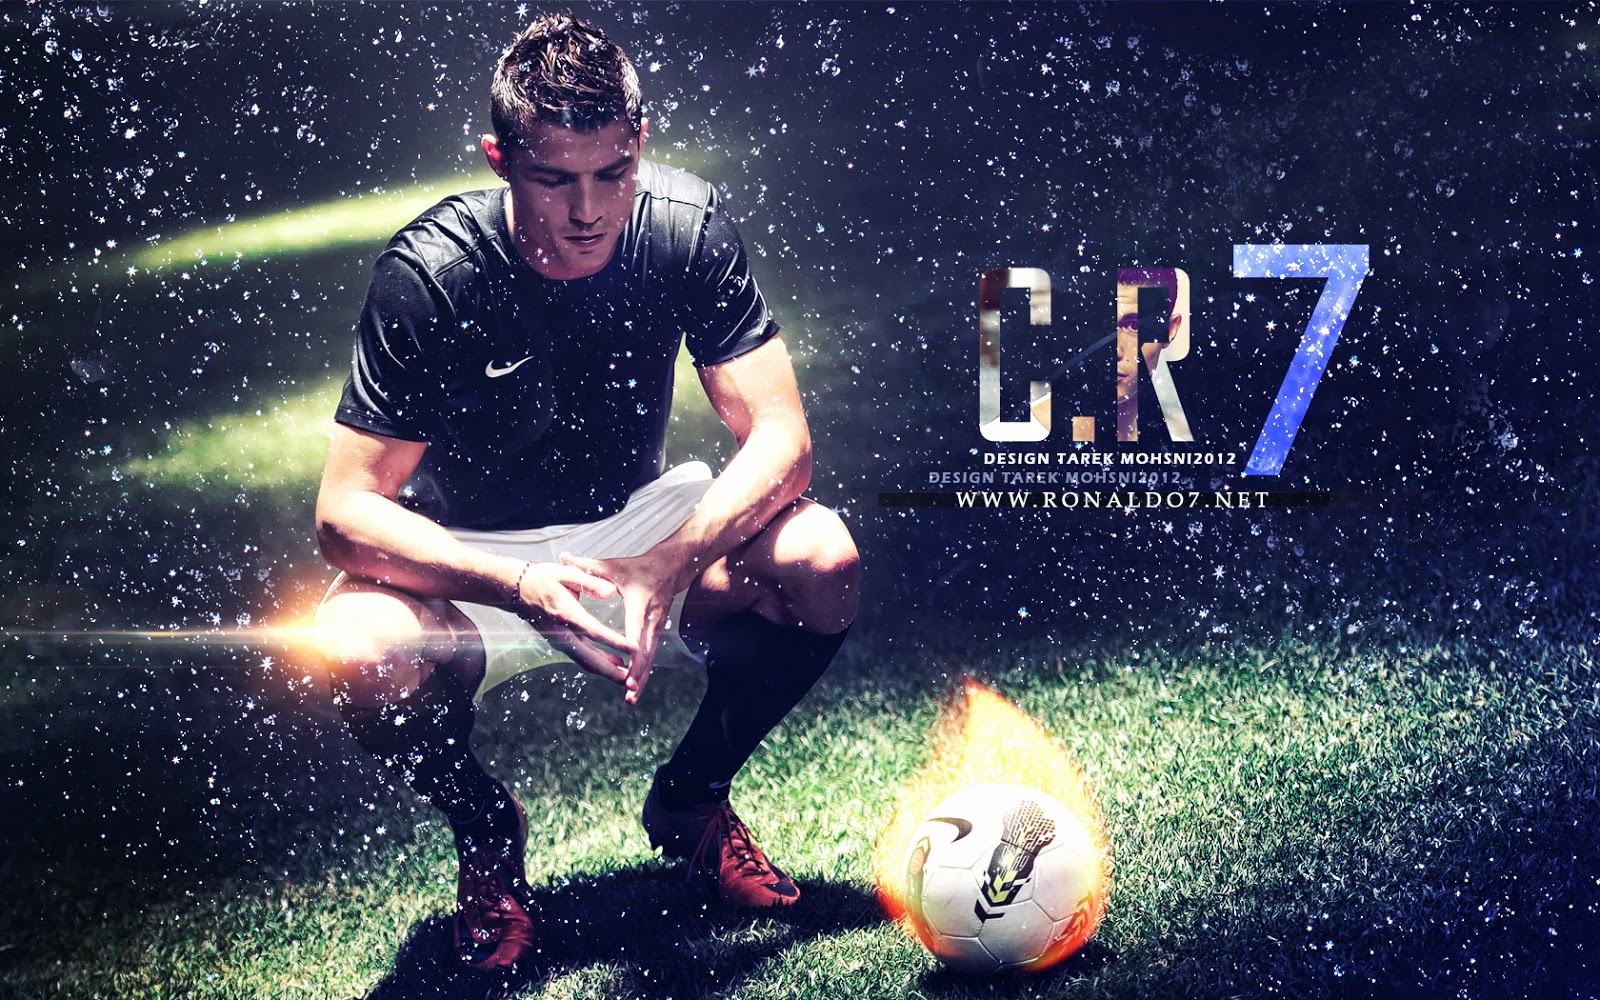 Cristiano Ronaldo HD Wallpaper Image Pics